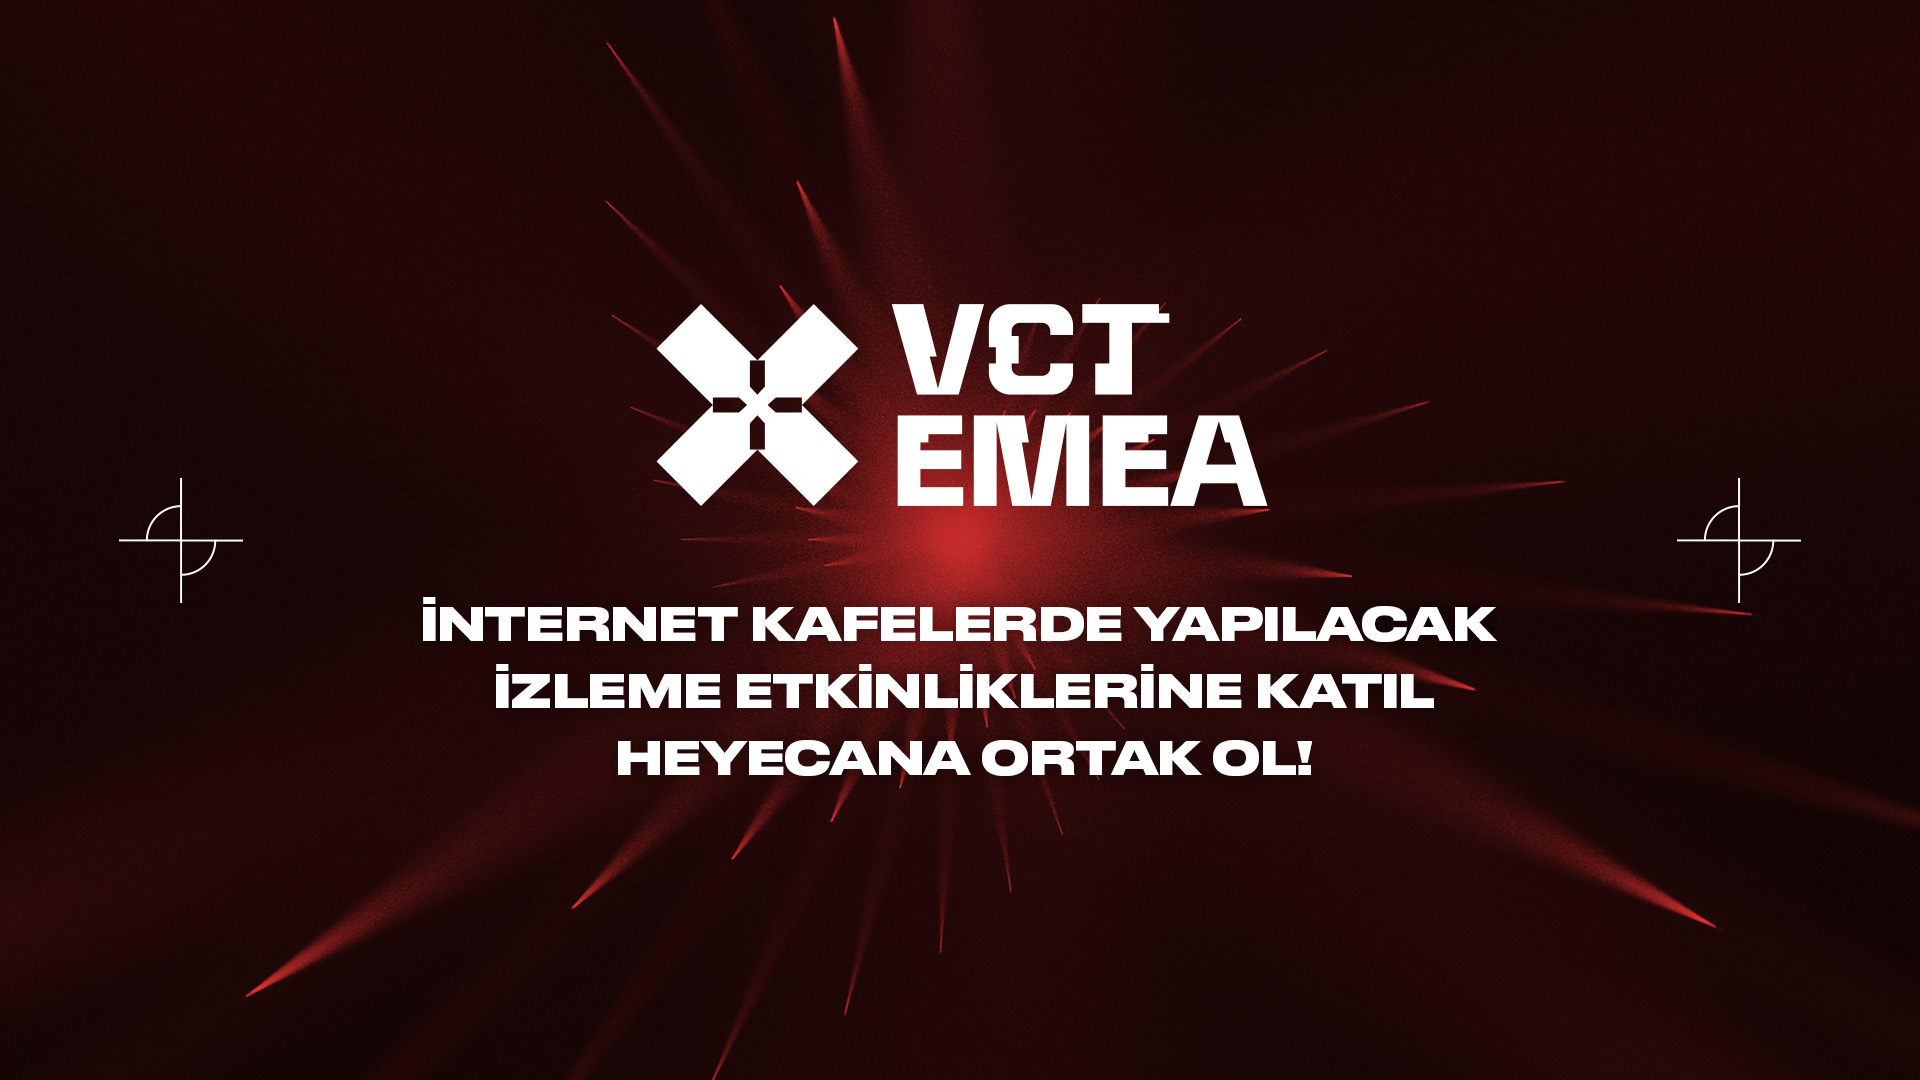 VCT EMEA izleme etkinlikleri